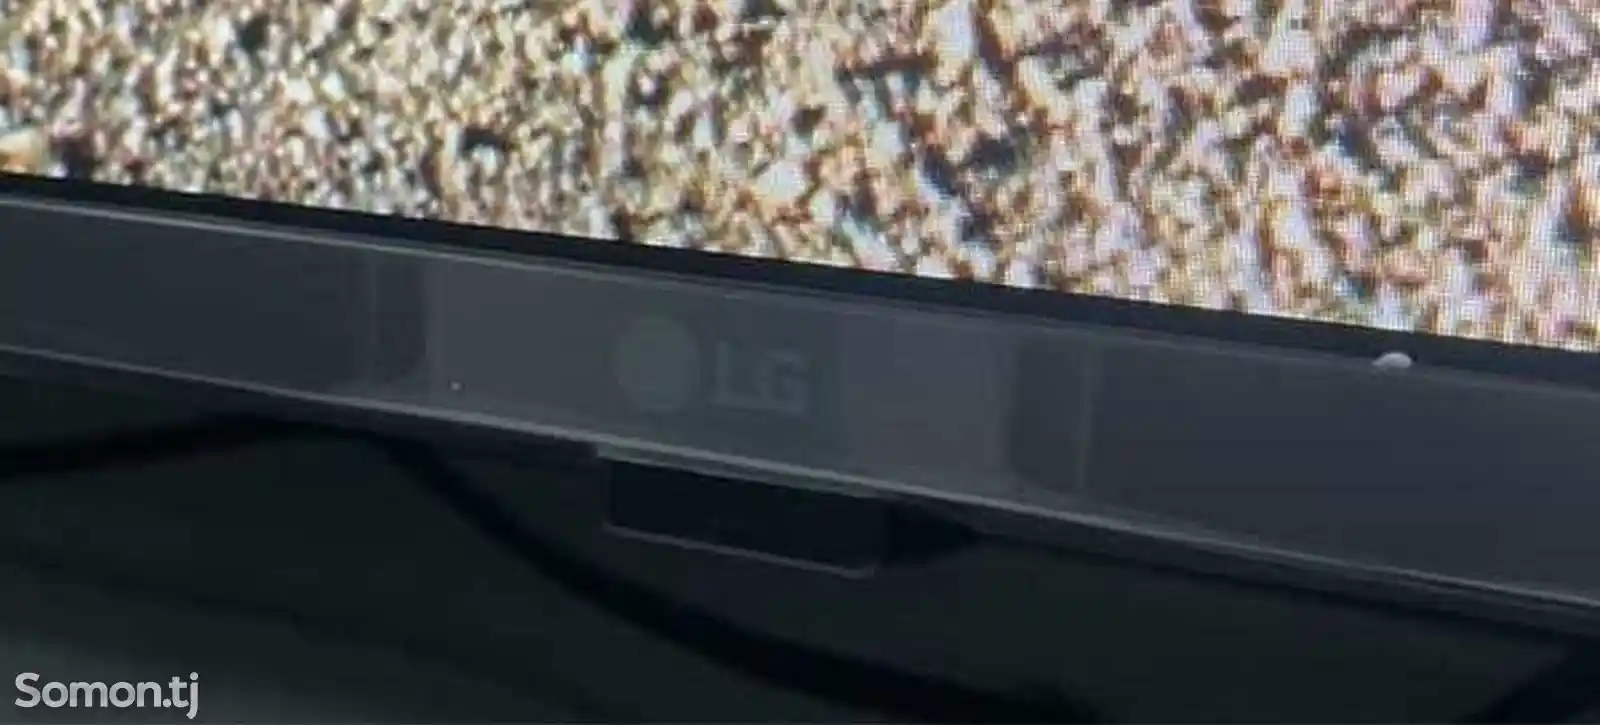 Телевизор LG-4